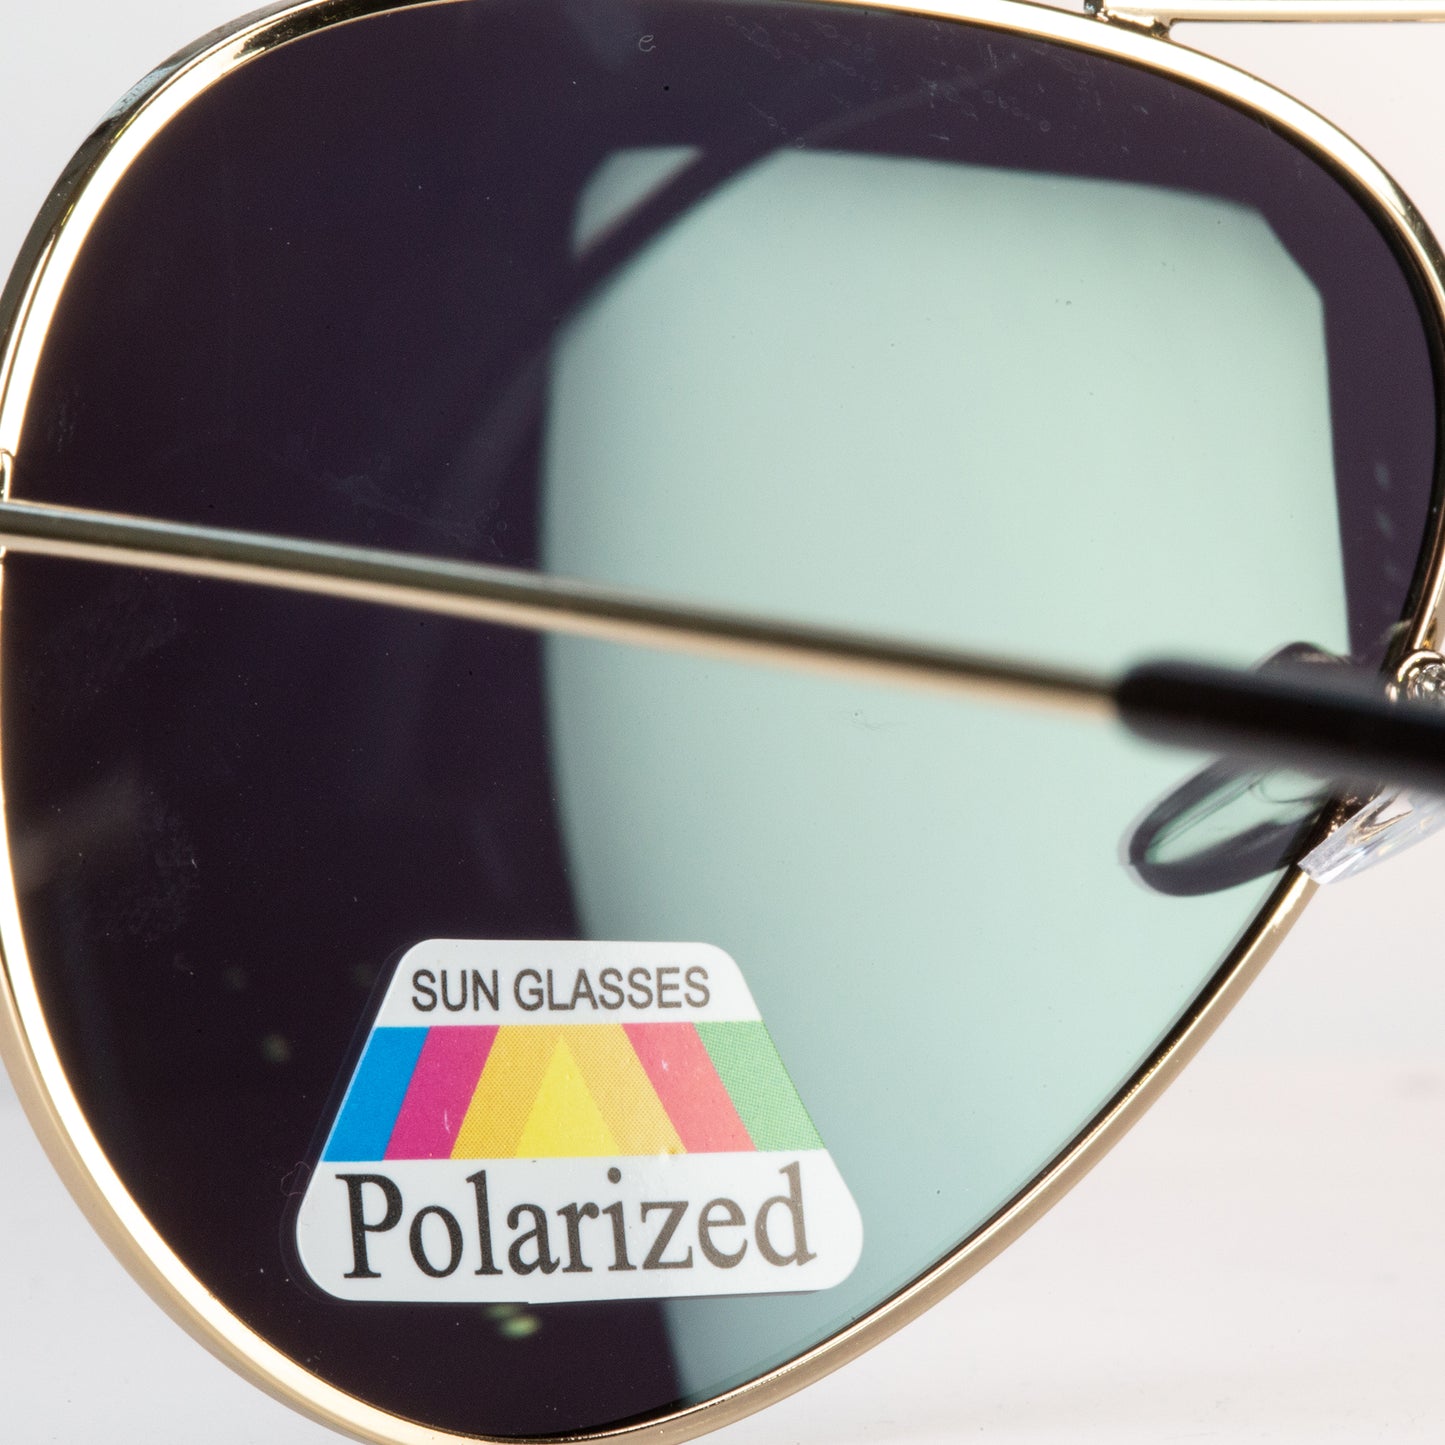 Emporia Italy - Gafas de sol piloto "JUNGLA", gafas de sol polarizadas con filtro UV con estuche y paño de limpieza, lentes amarillo verdoso, montura dorada